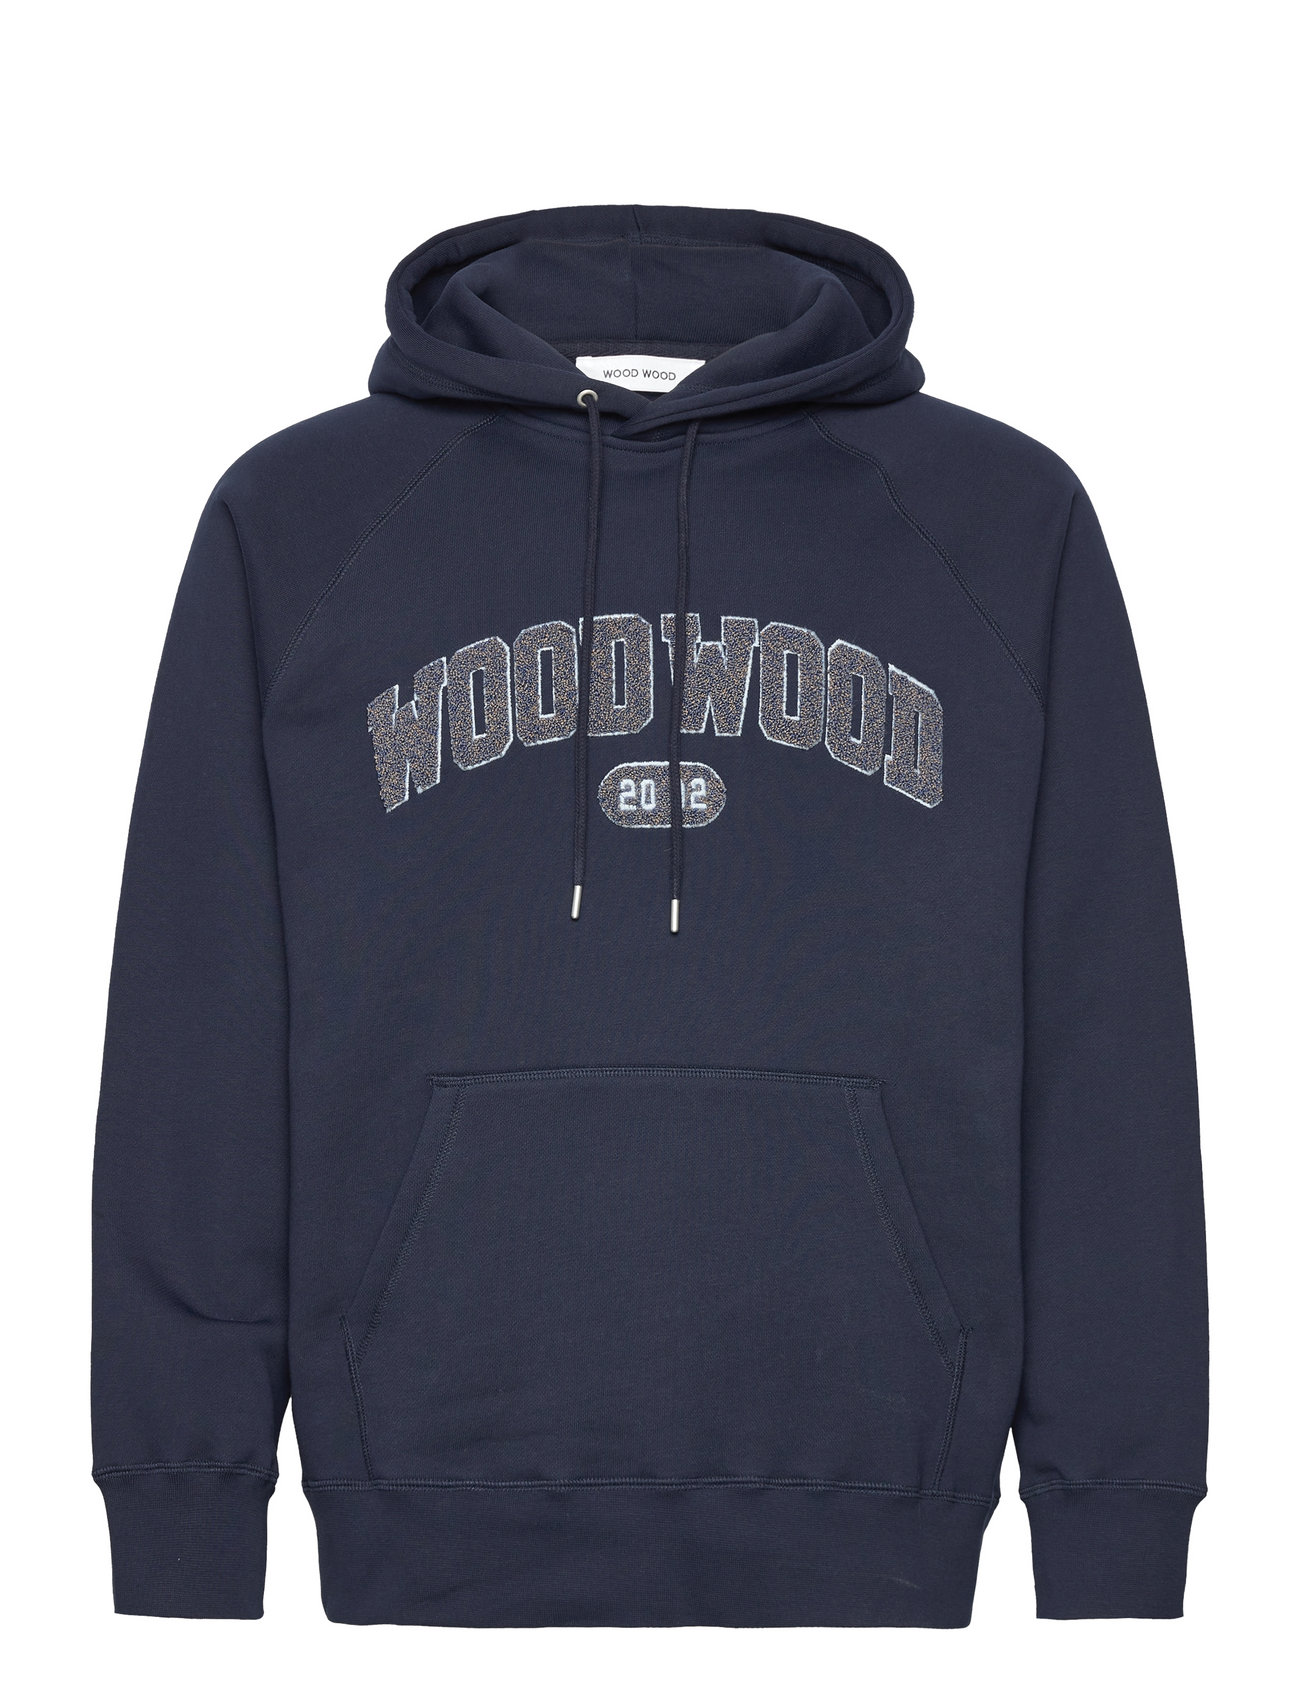 Fred Ivy Hoodie Designers Sweatshirts & Hoodies Hoodies Navy Wood Wood